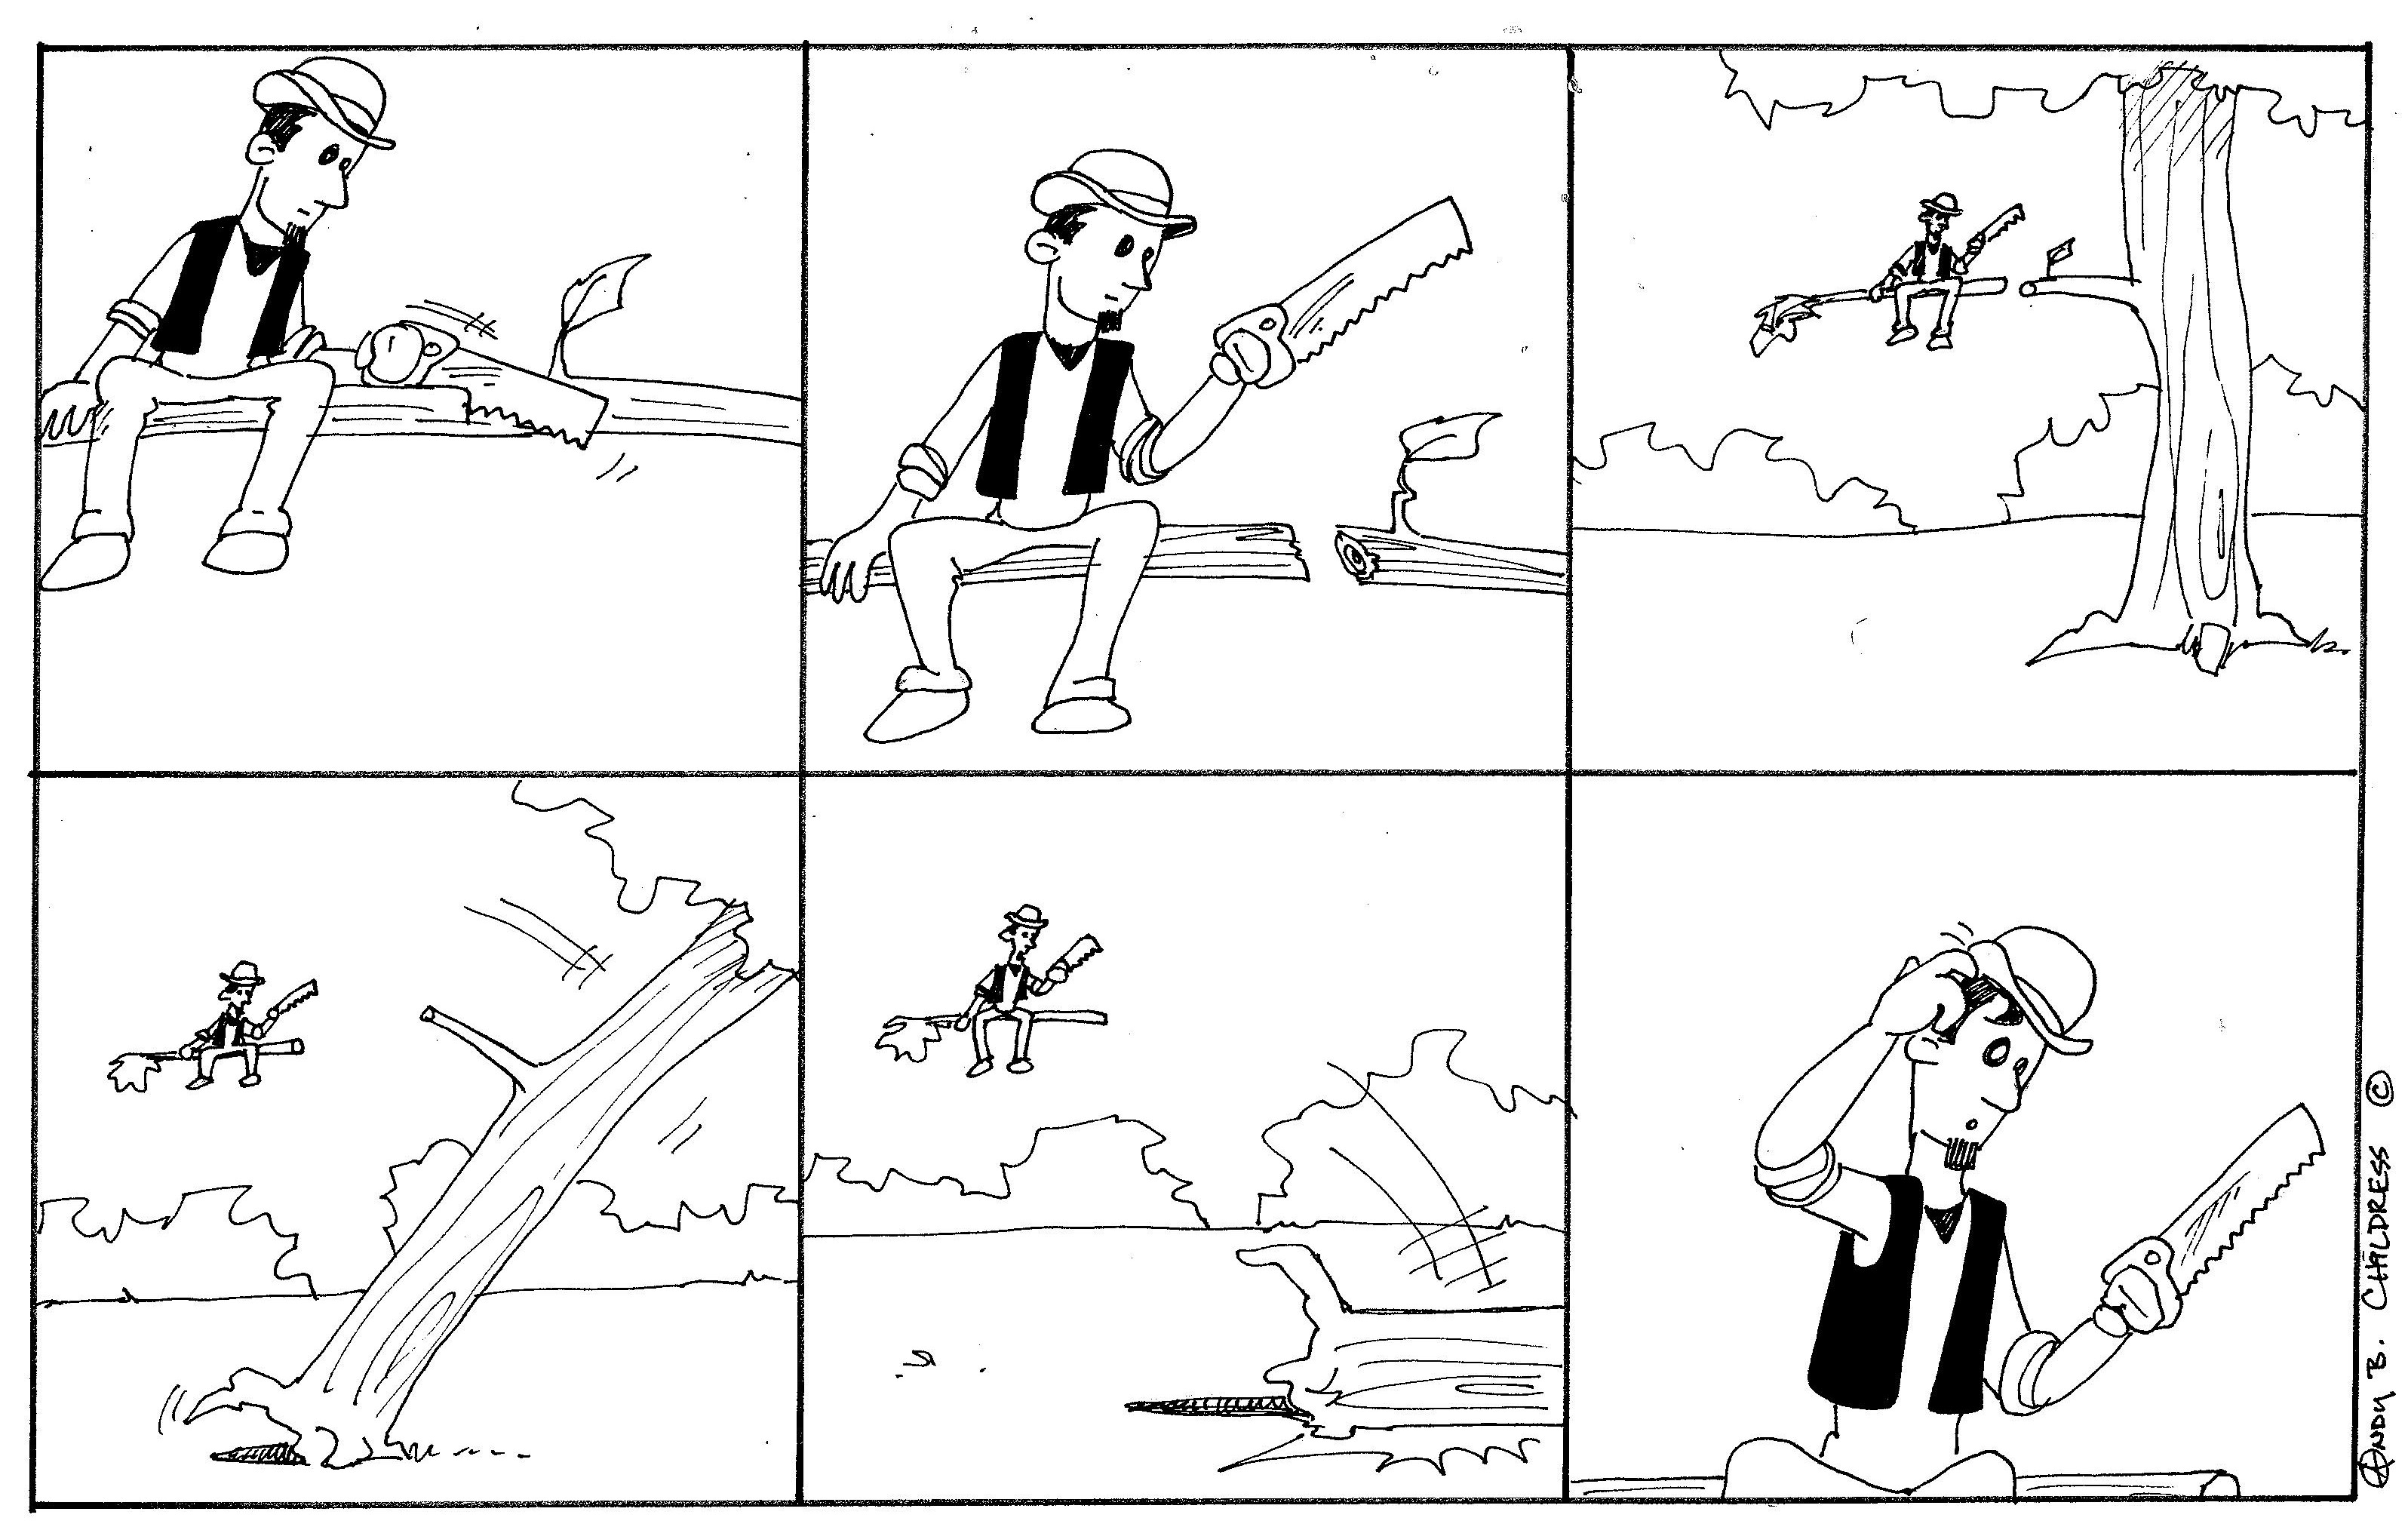 Joe blitz comic strip